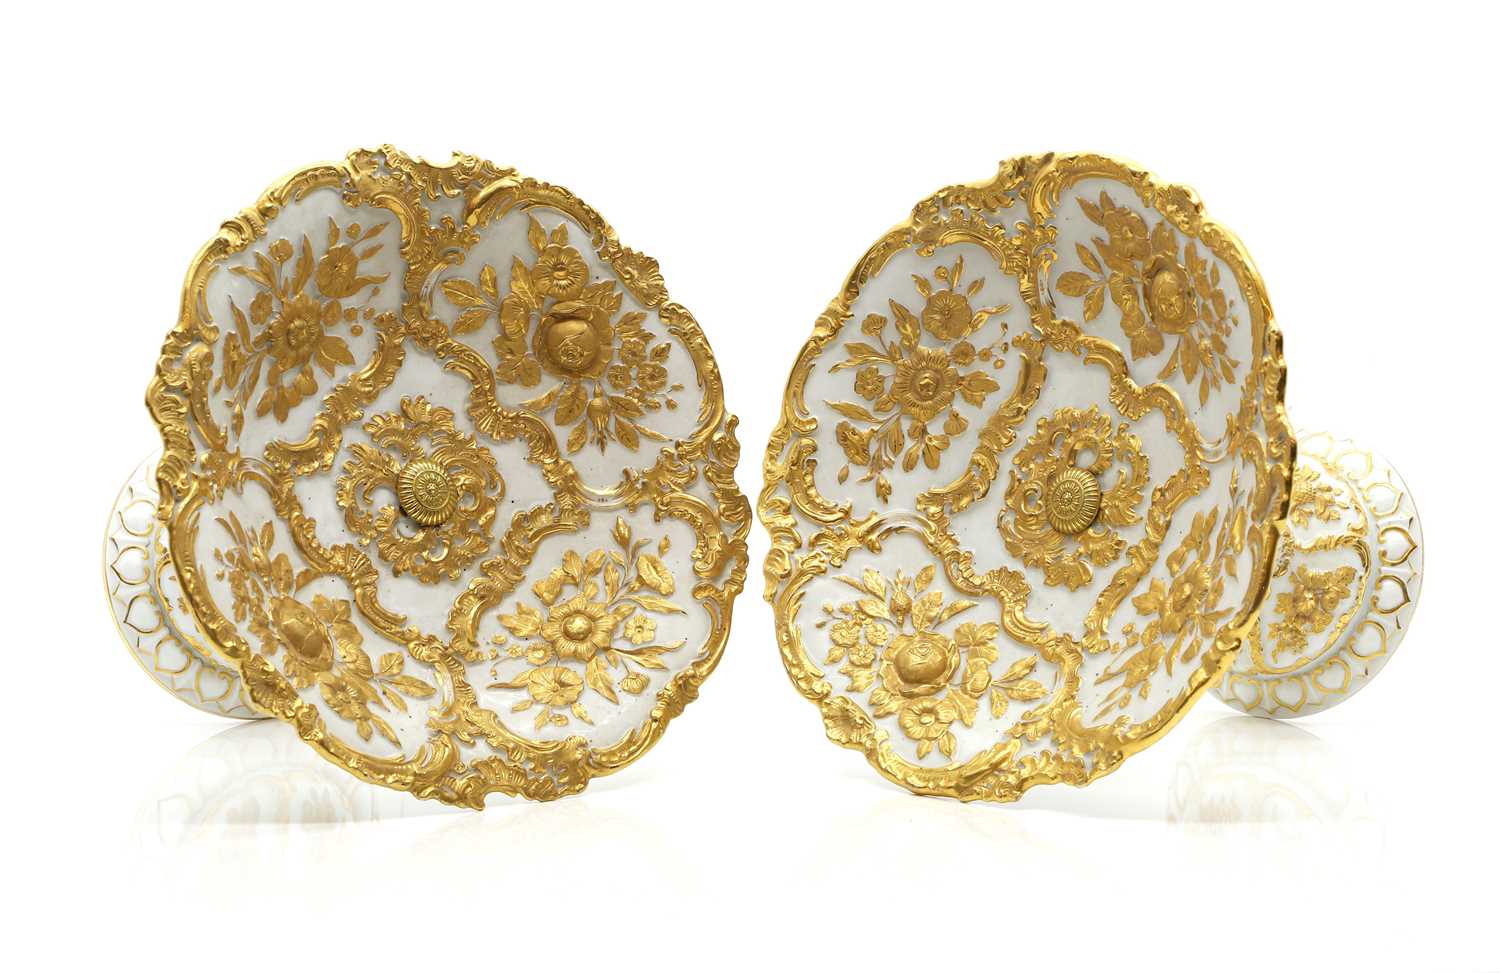 A pair of Meissen porcelain comports